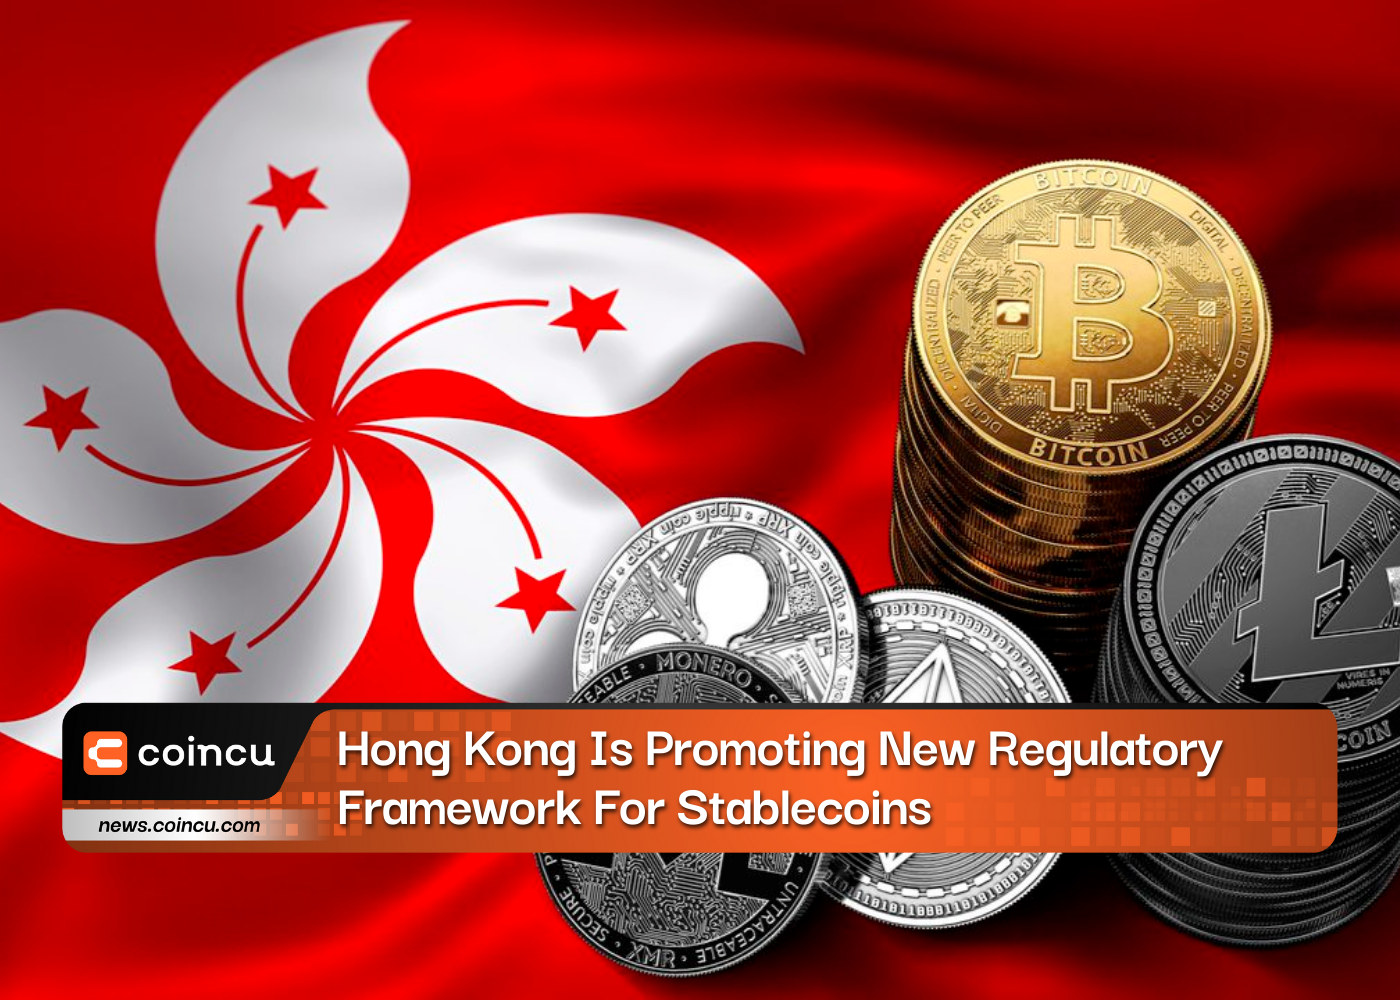 हांगकांग स्थिर सिक्कों के लिए नए नियामक ढांचे को बढ़ावा दे रहा है